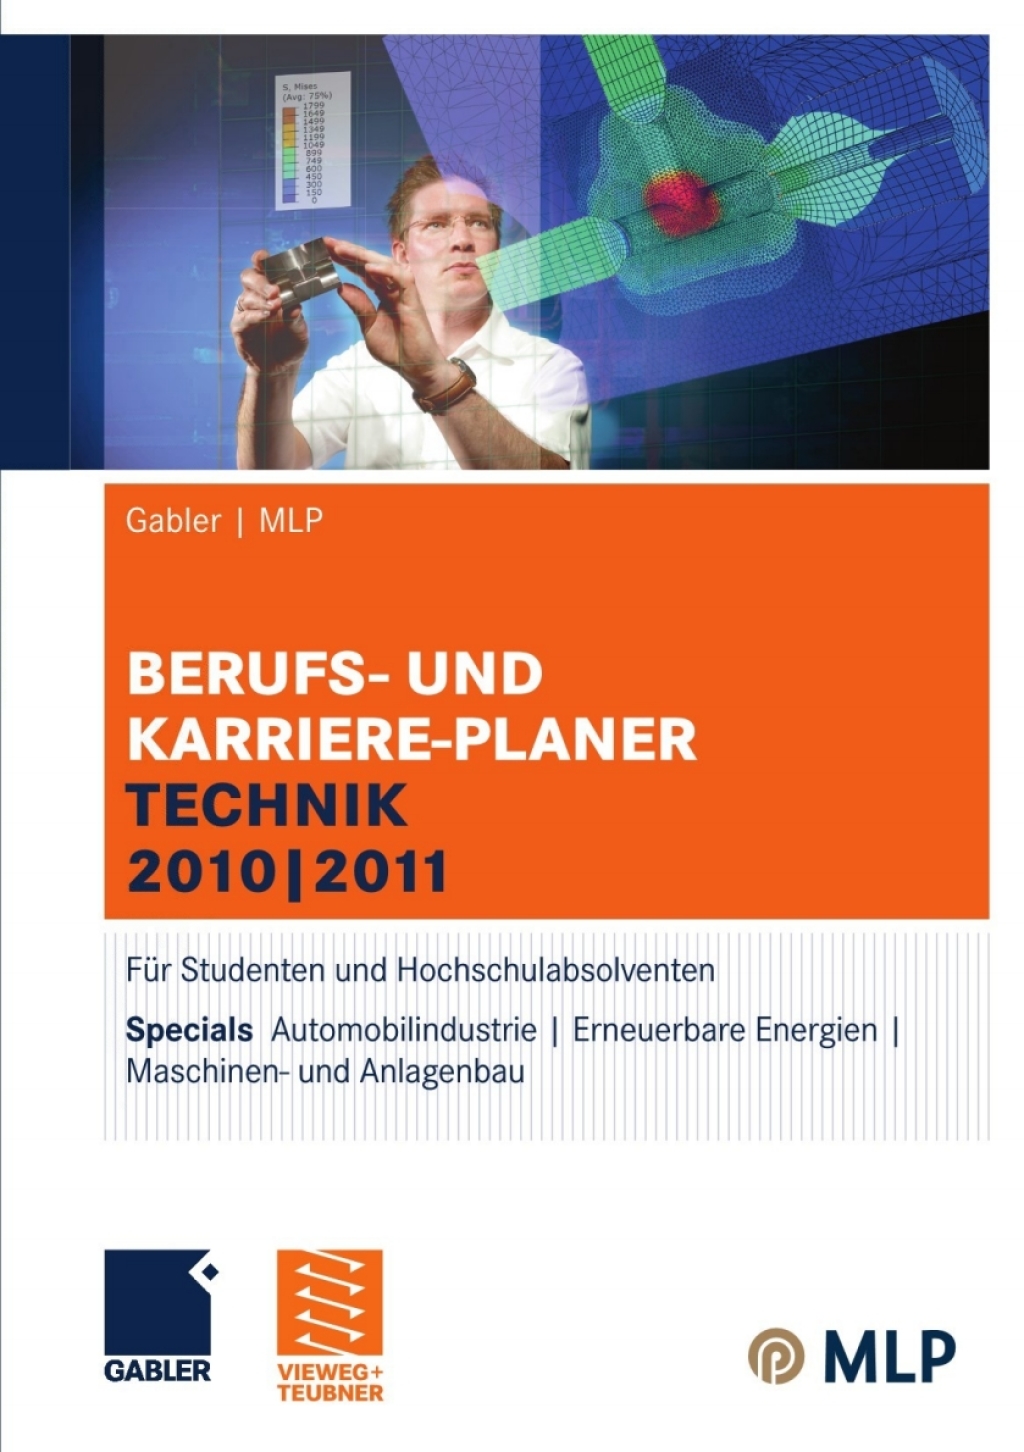 Gabler | MLP Berufs- und Karriere-Planer Technik 2010 | 2011 - 12th Edition (eBook)